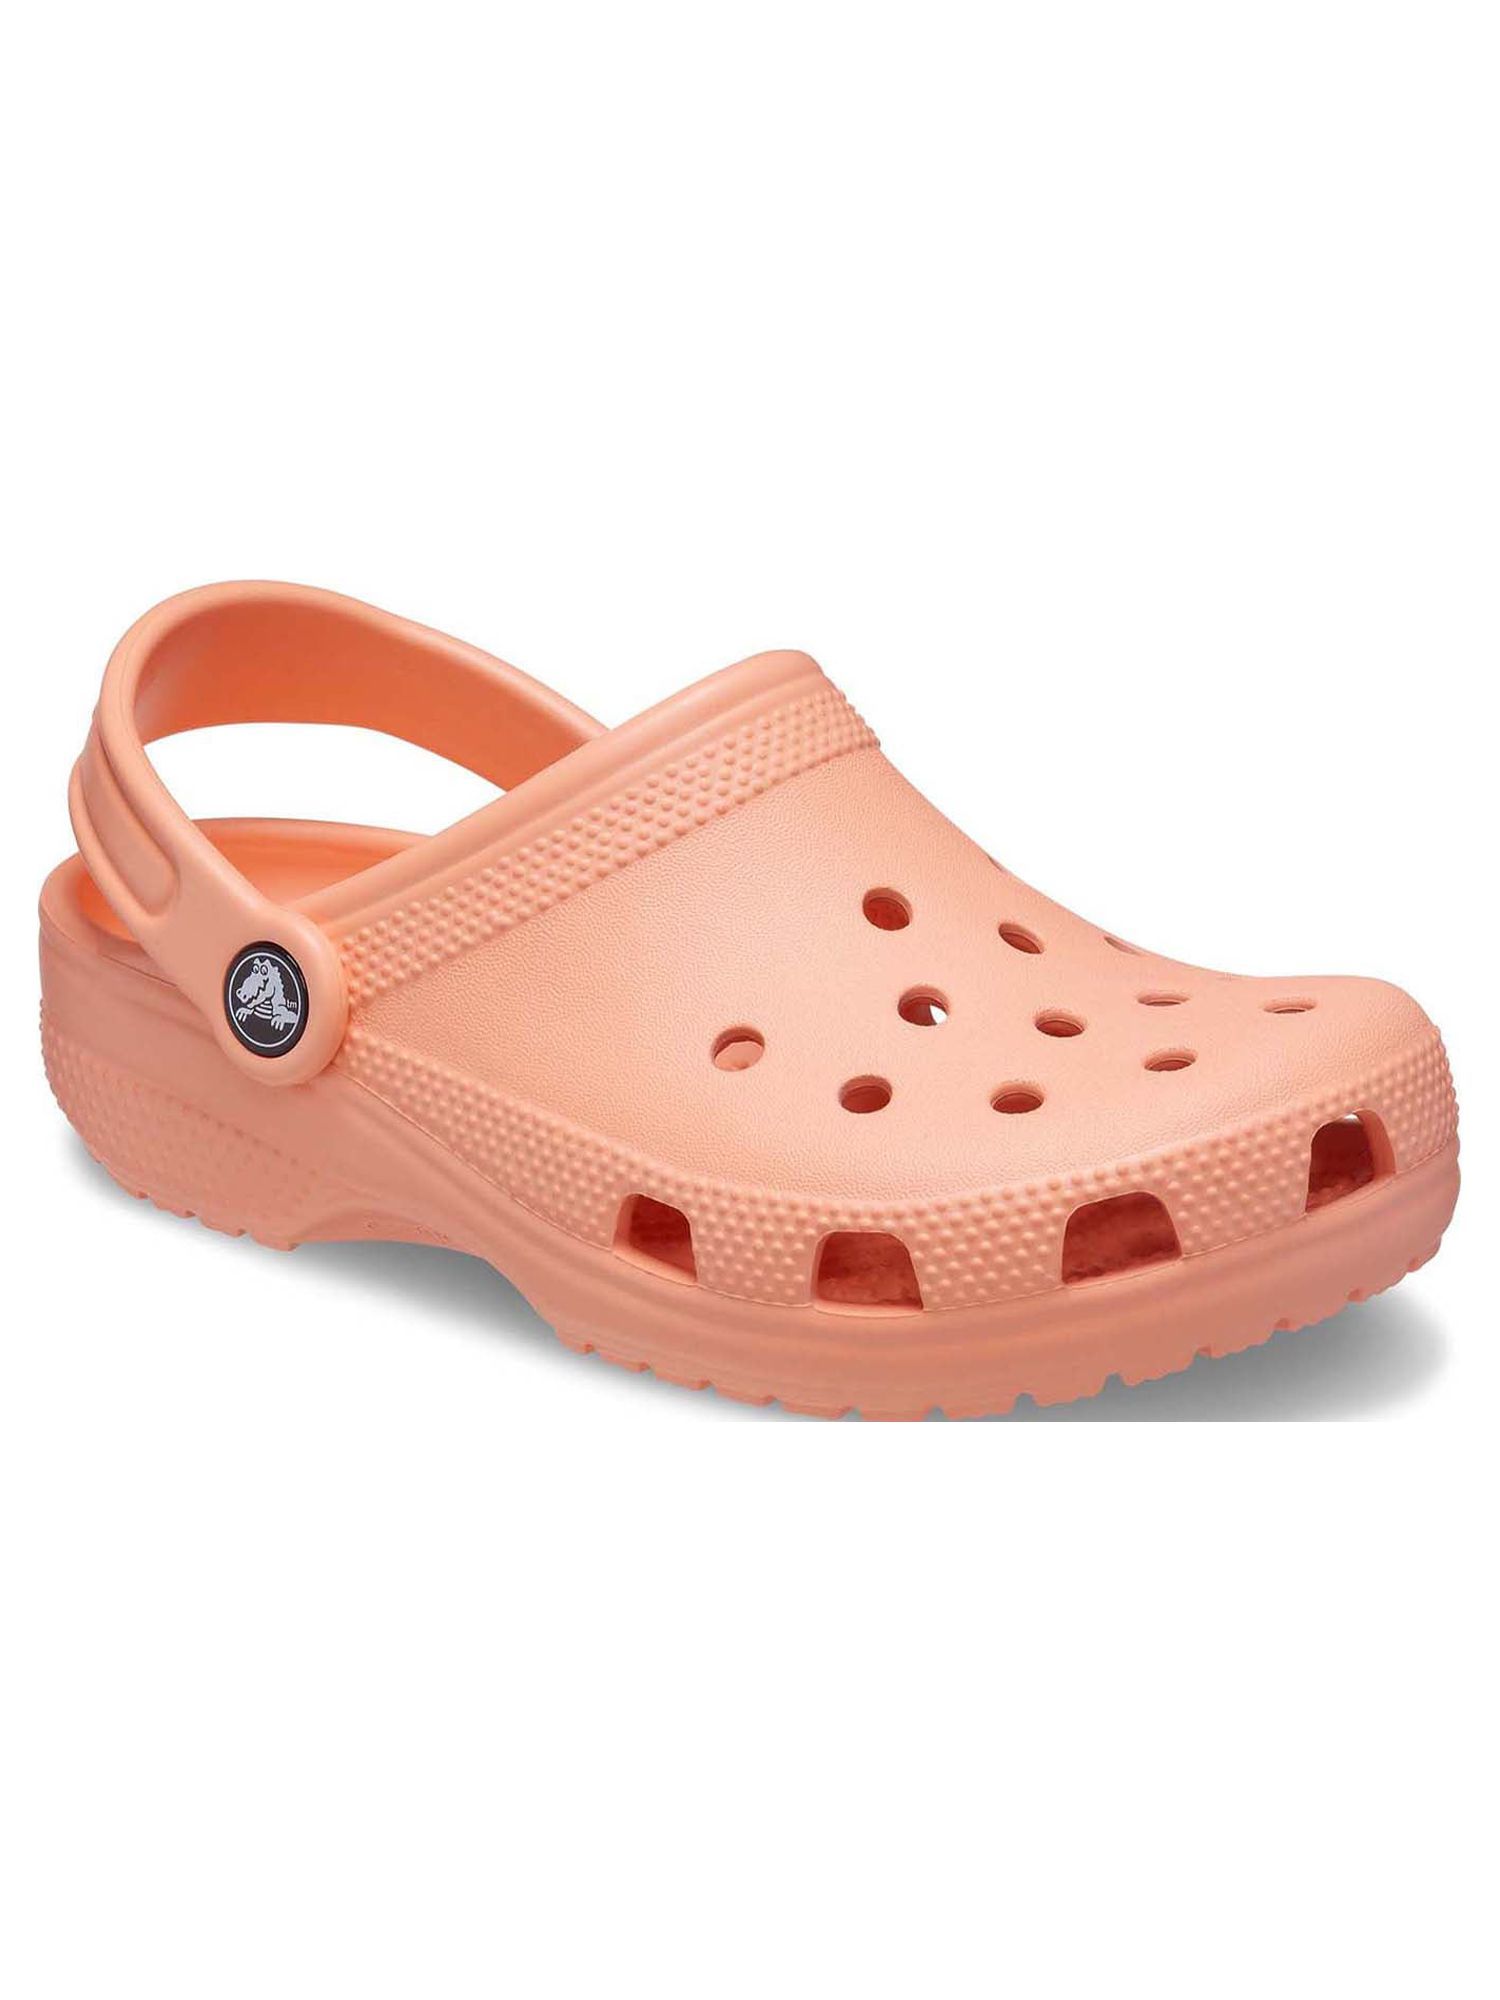 Crocs Toddler & Kids Classic Clog | Walmart (US)